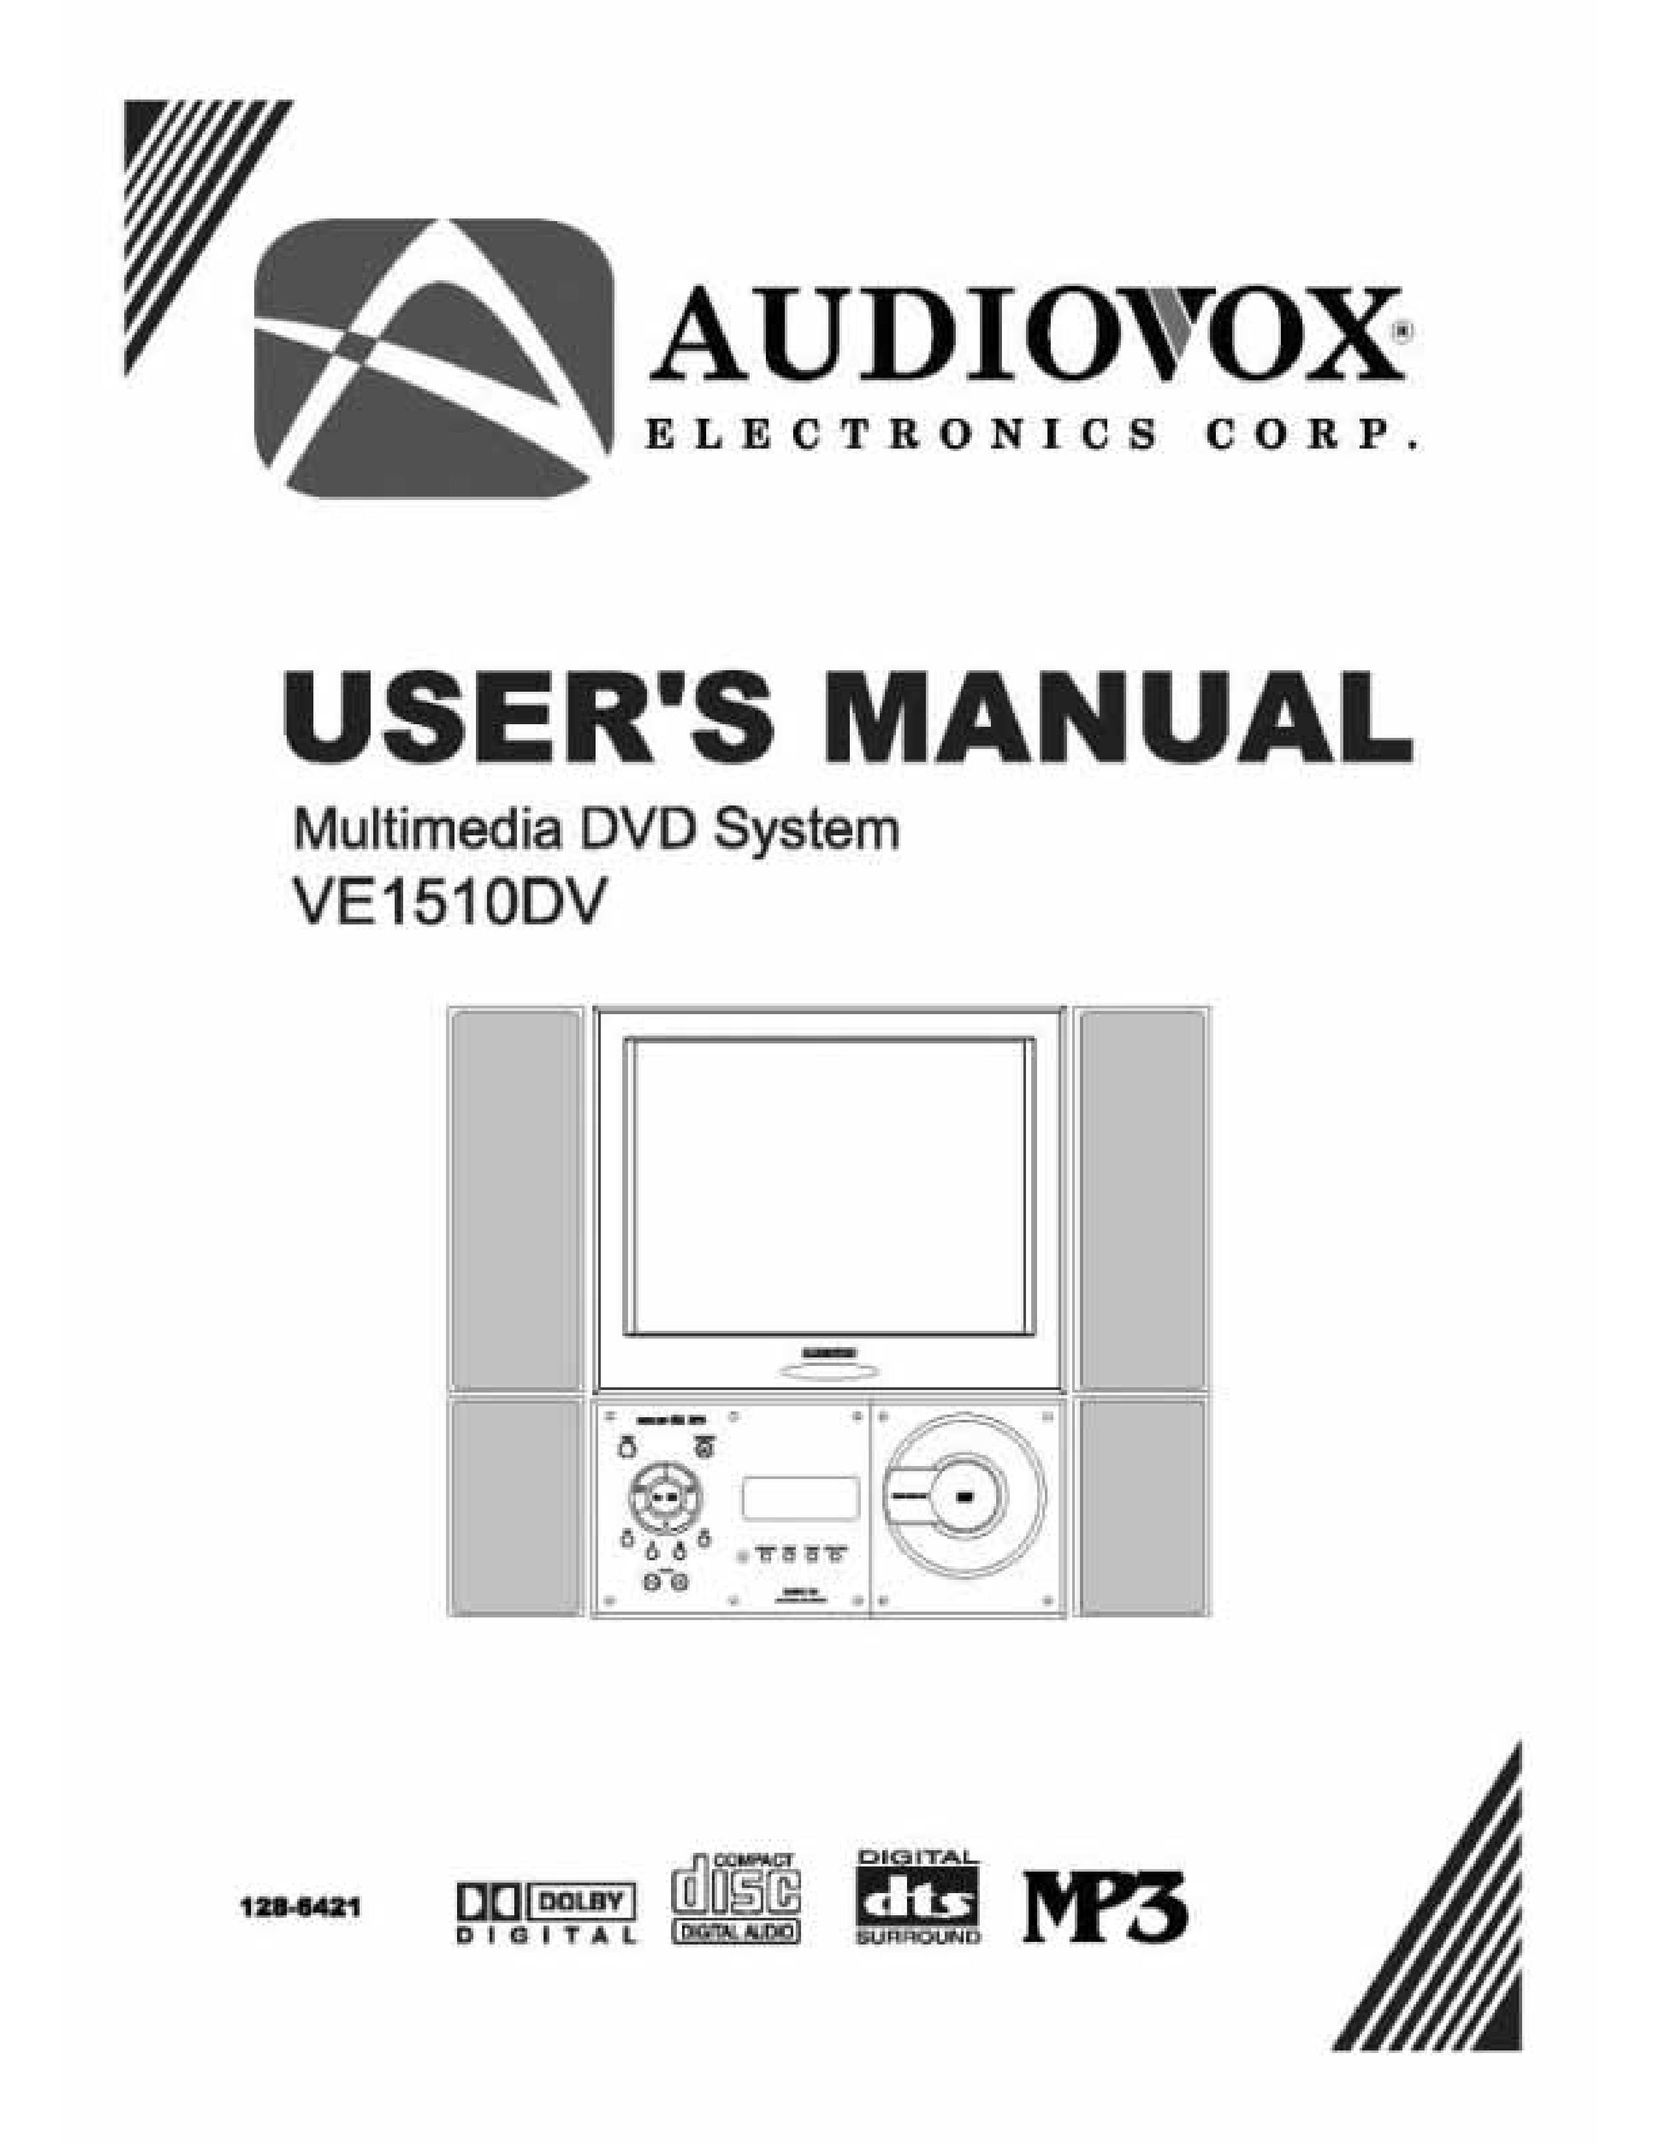 Audiovox VE 1510DV TV DVD Combo User Manual